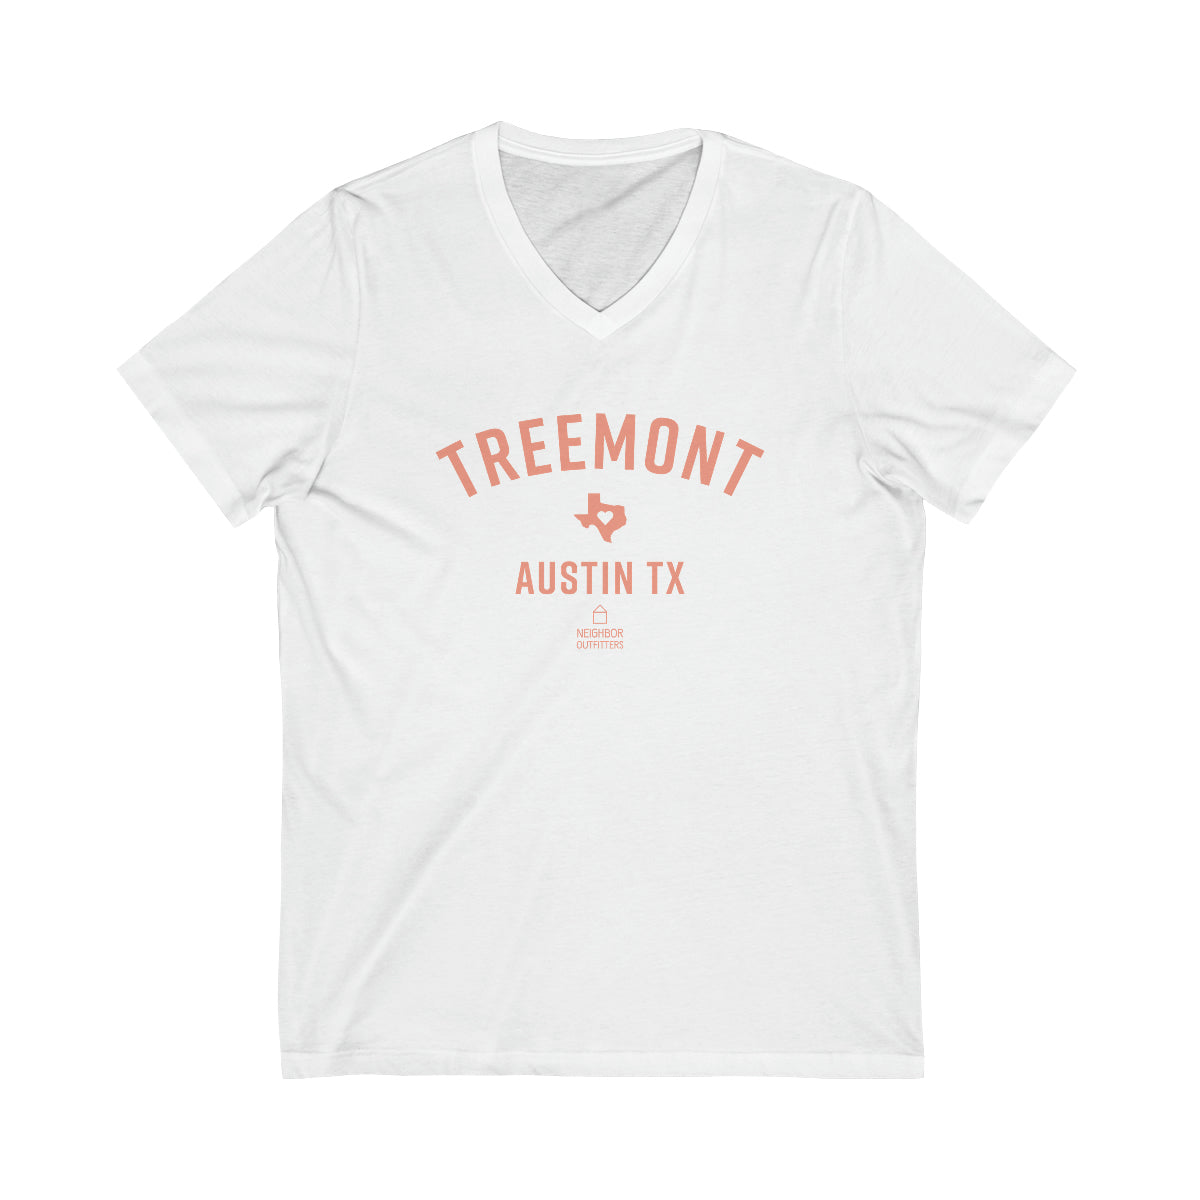 Treemont T-Shirt - "Full Hearts" V-Neck